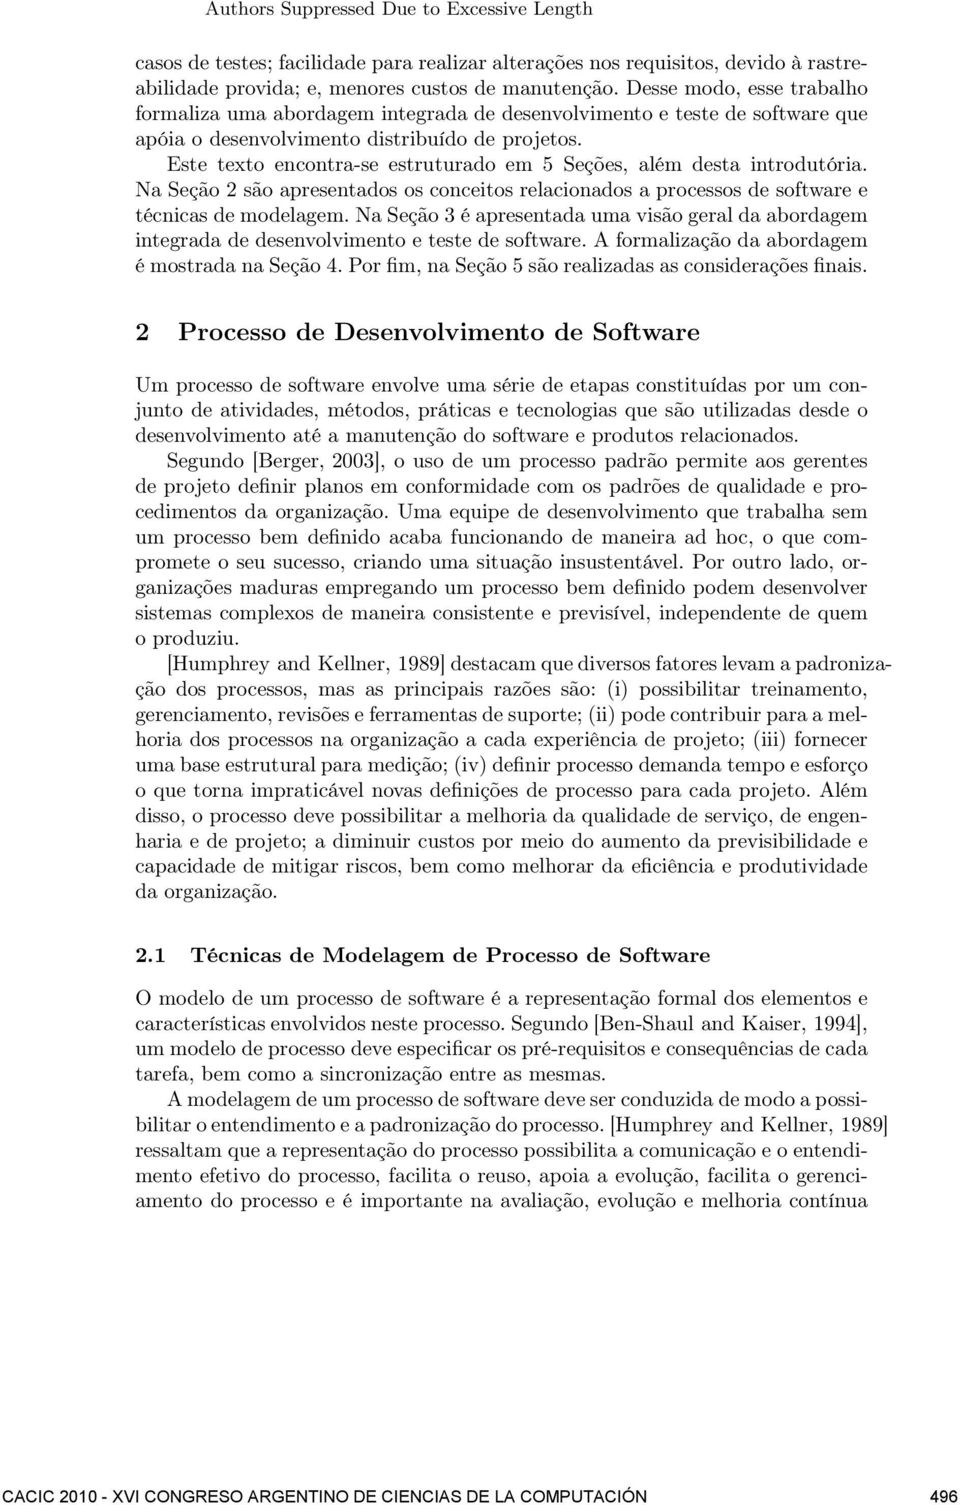 Este texto encontra-se estruturado em 5 Seções, além desta introdutória. Na Seção 2 são apresentados os conceitos relacionados a processos de software e técnicas de modelagem.